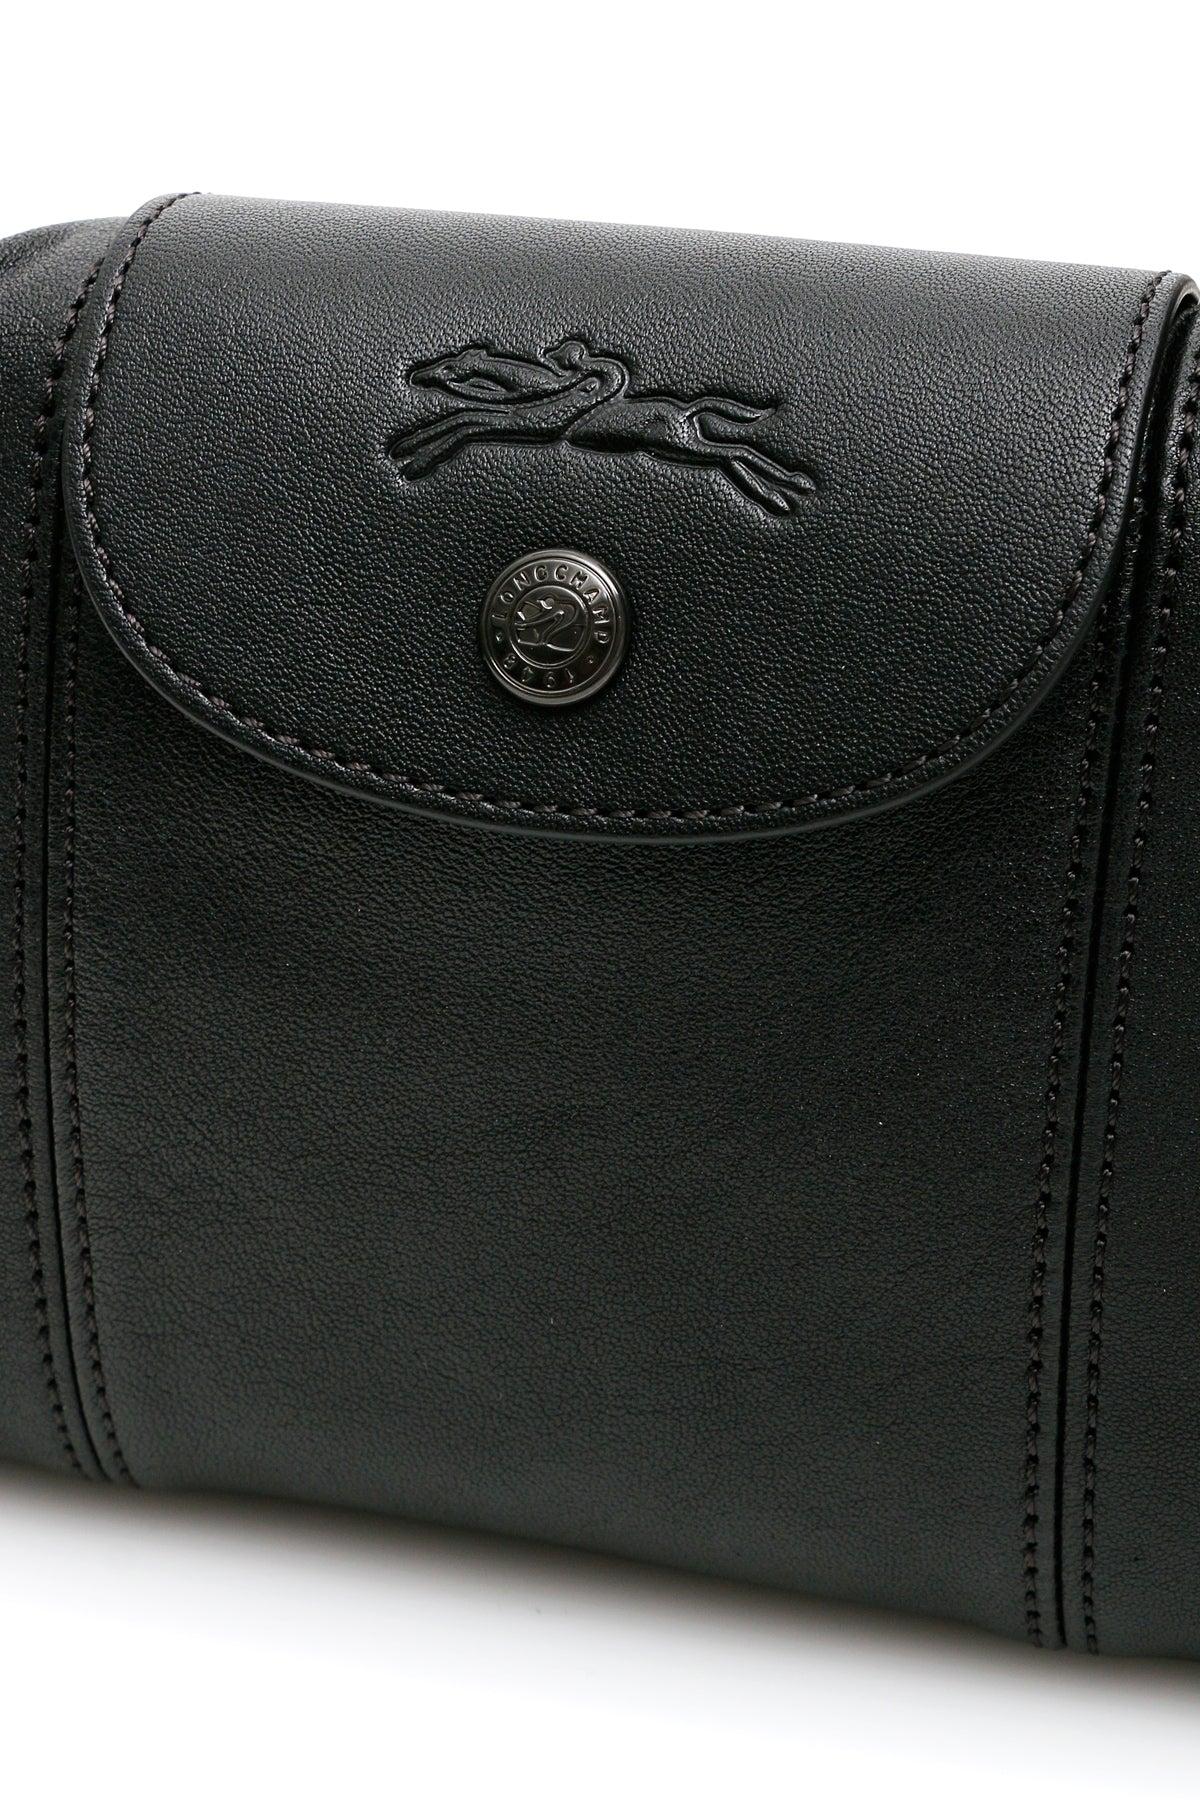 Longchamp Leather Le Pliage Cuir Mini Shoulder Bag in Black | Lyst